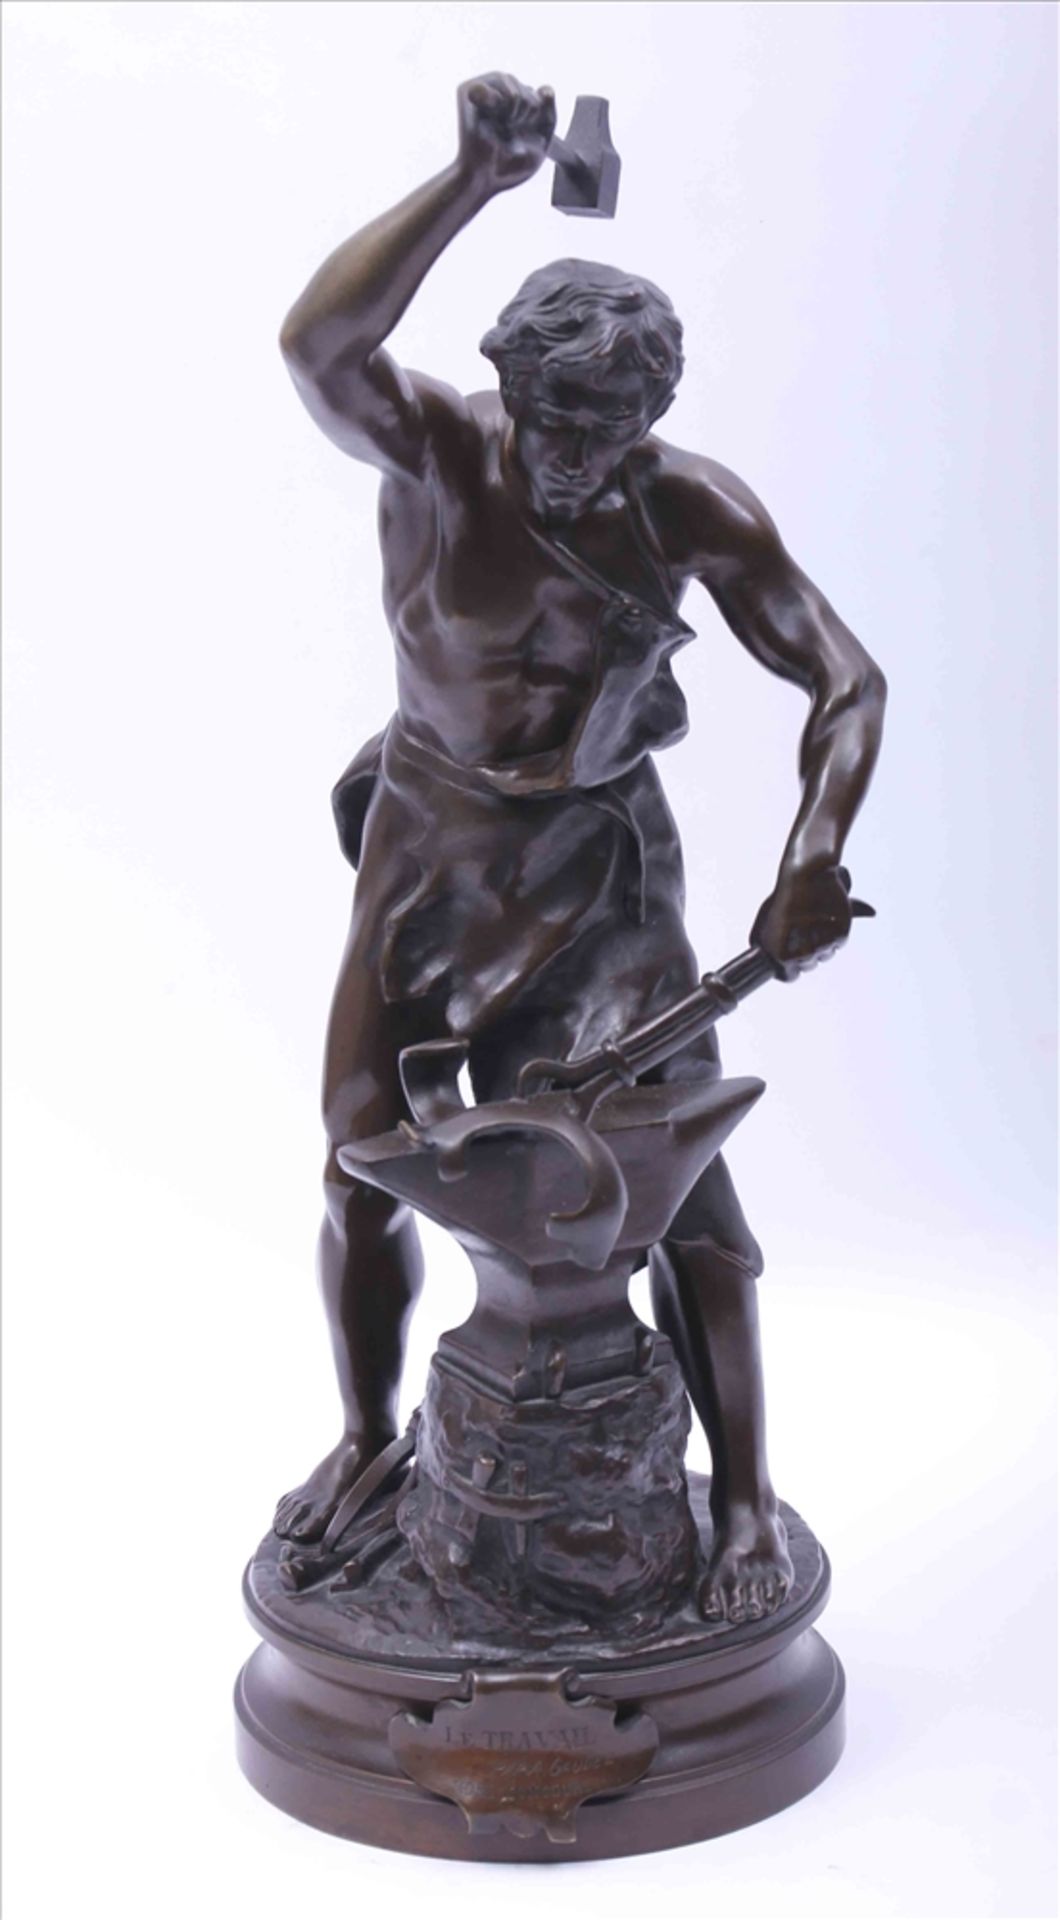 Adrien Étienne Gaudez (1845 - 1902), "Le Travail", Bronze, braun patiniert, stehender Schmied am